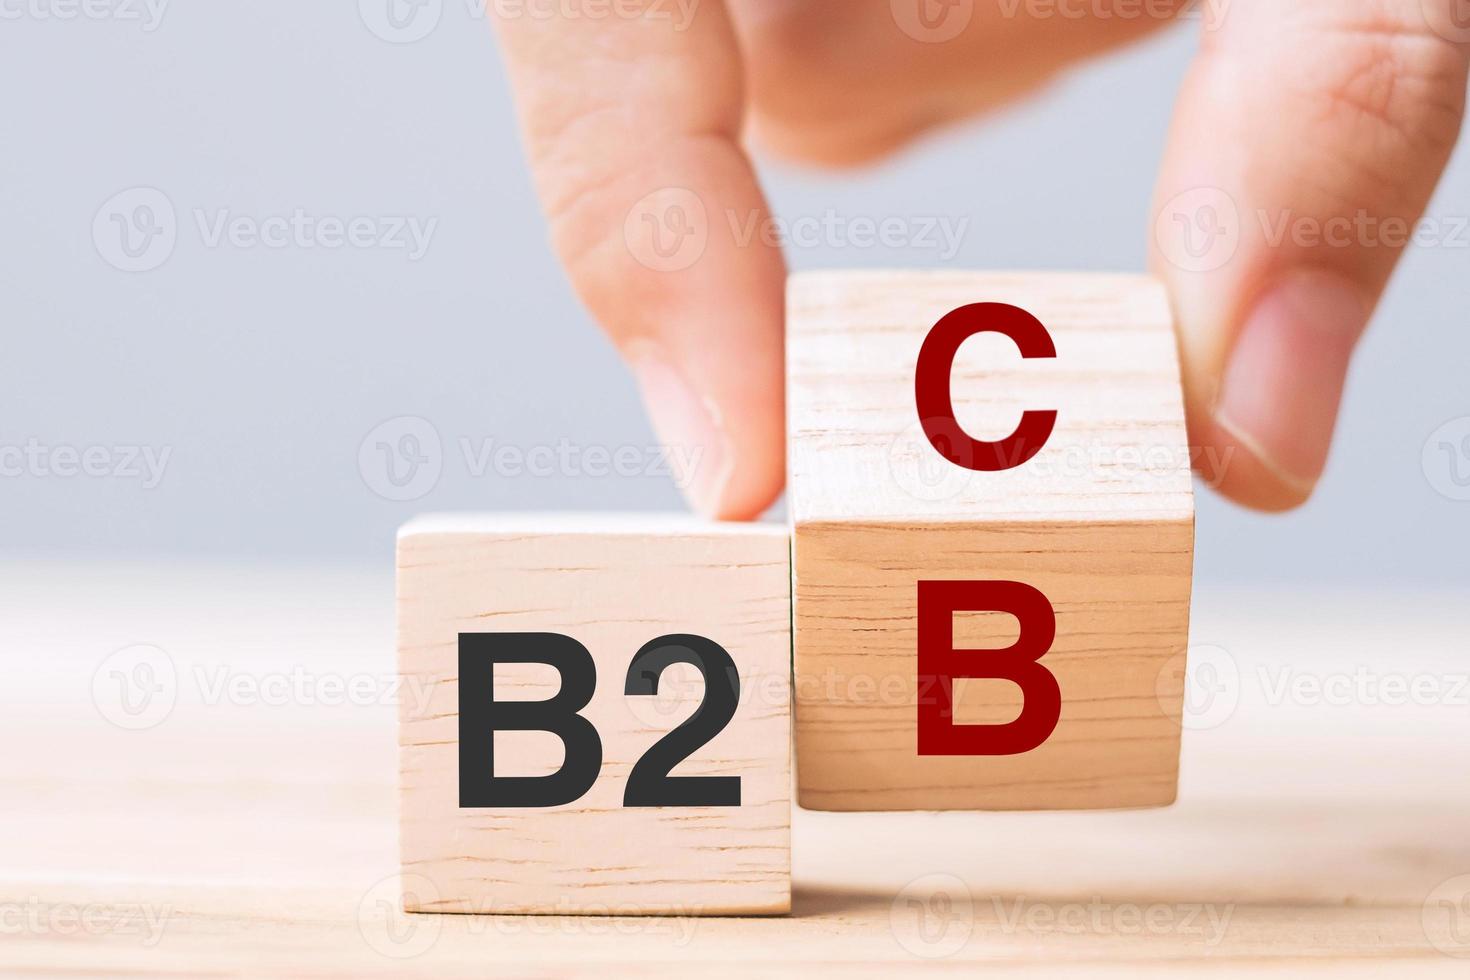 mão mude o bloco de cubo de madeira de b2c para b2b. conceitos de comércio eletrônico, marketing e estratégia foto